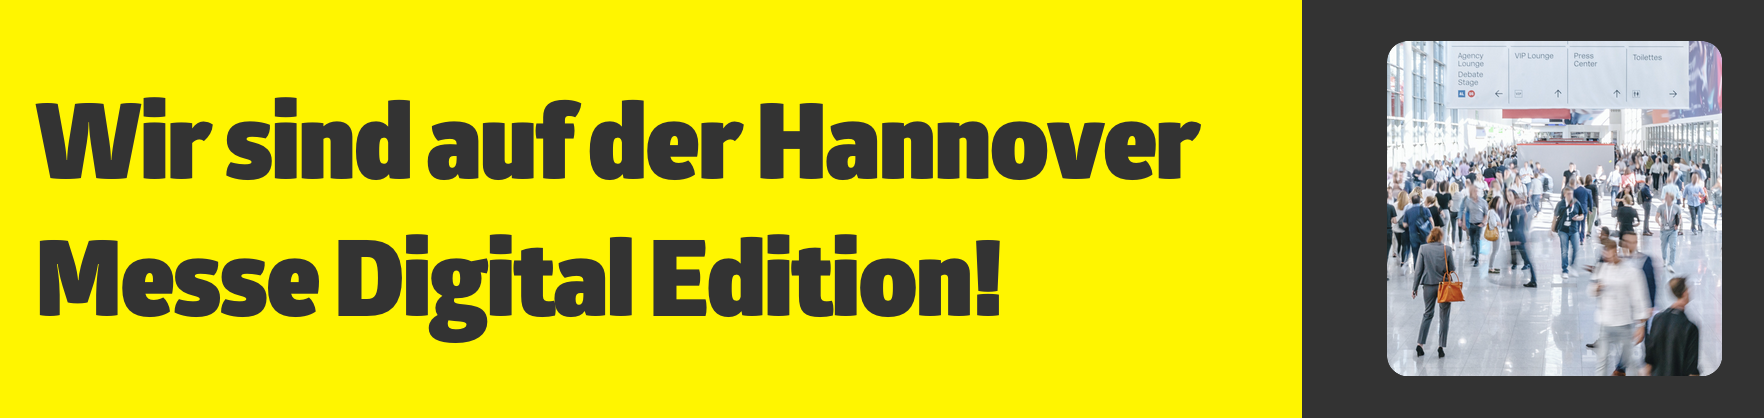 Wir sind auf der Hannover Messe Digital Edition